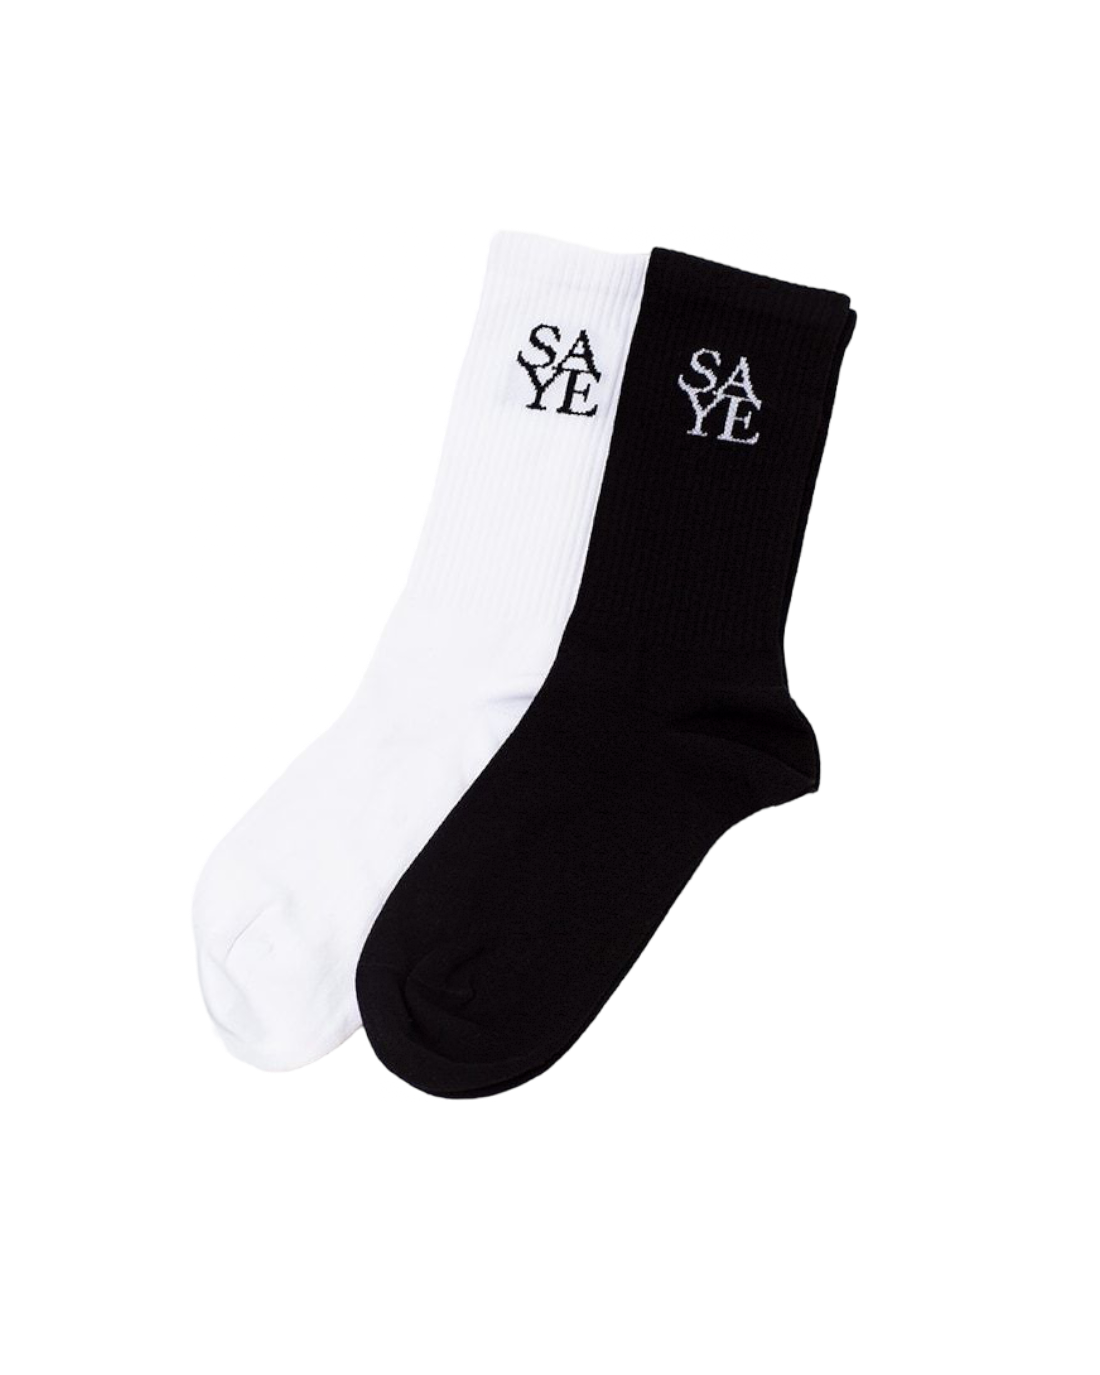 SAYE Socks In Black & White